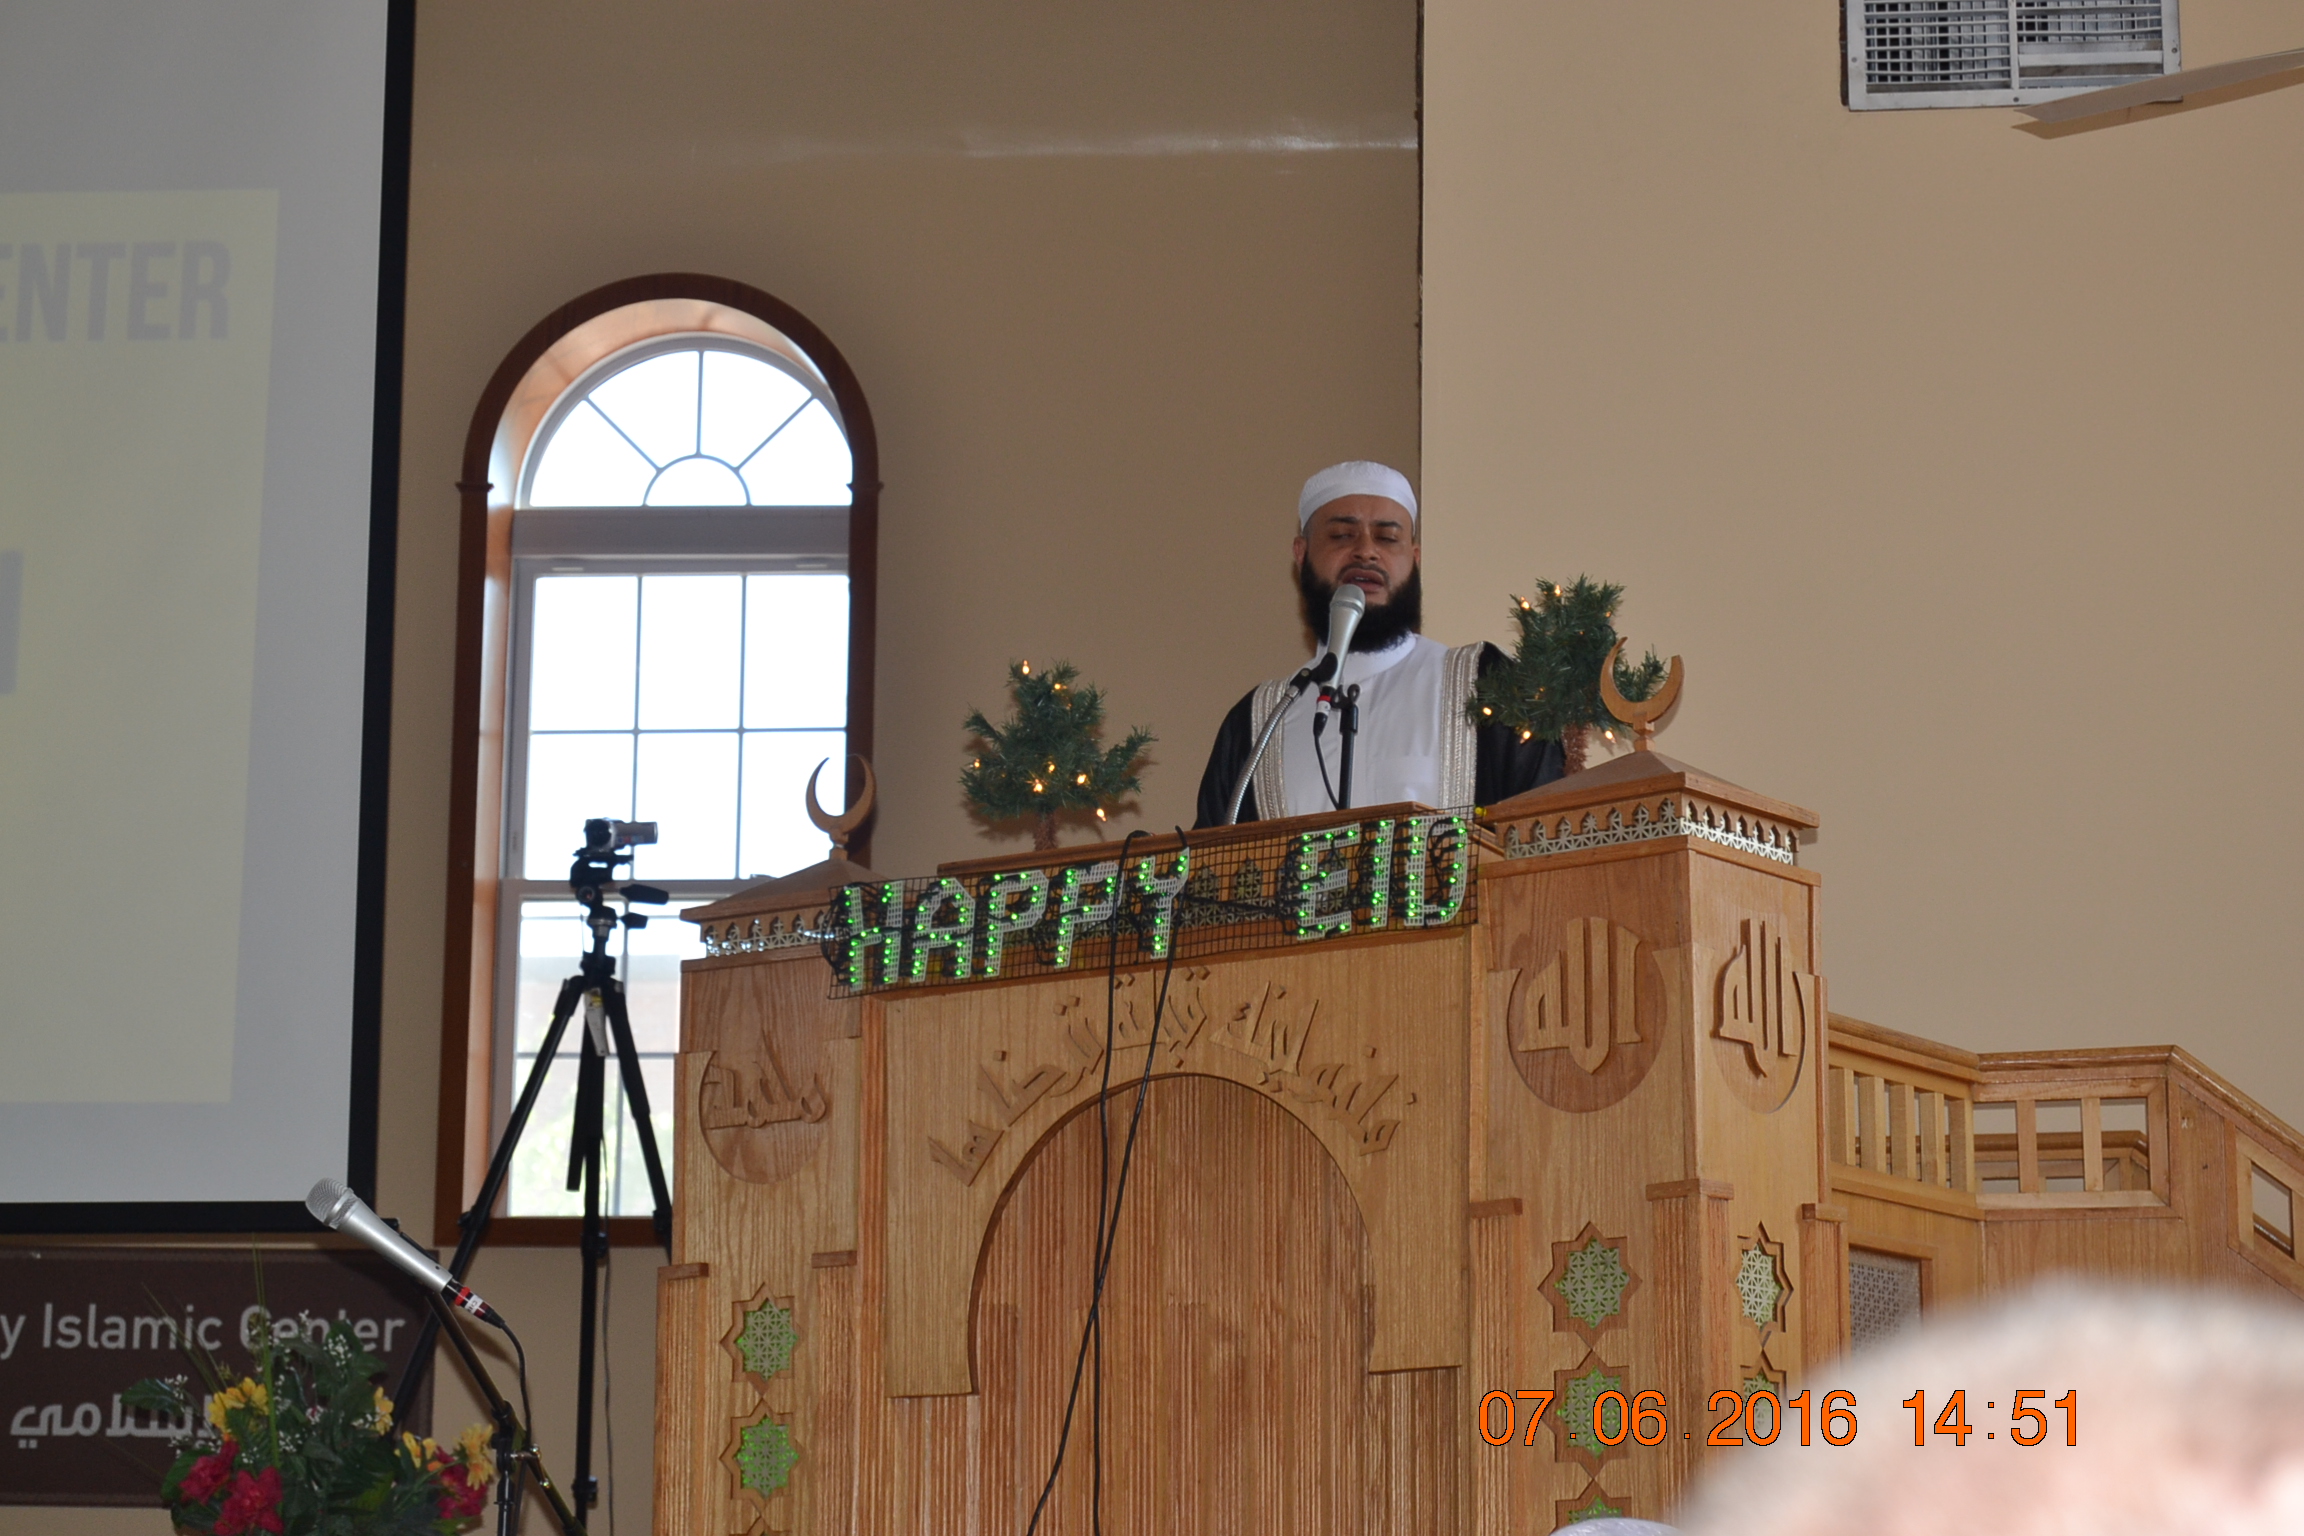 La communauté musulmane de New Jersey à célébré l' Eid Mubarack ce mercredi à Hackensack.